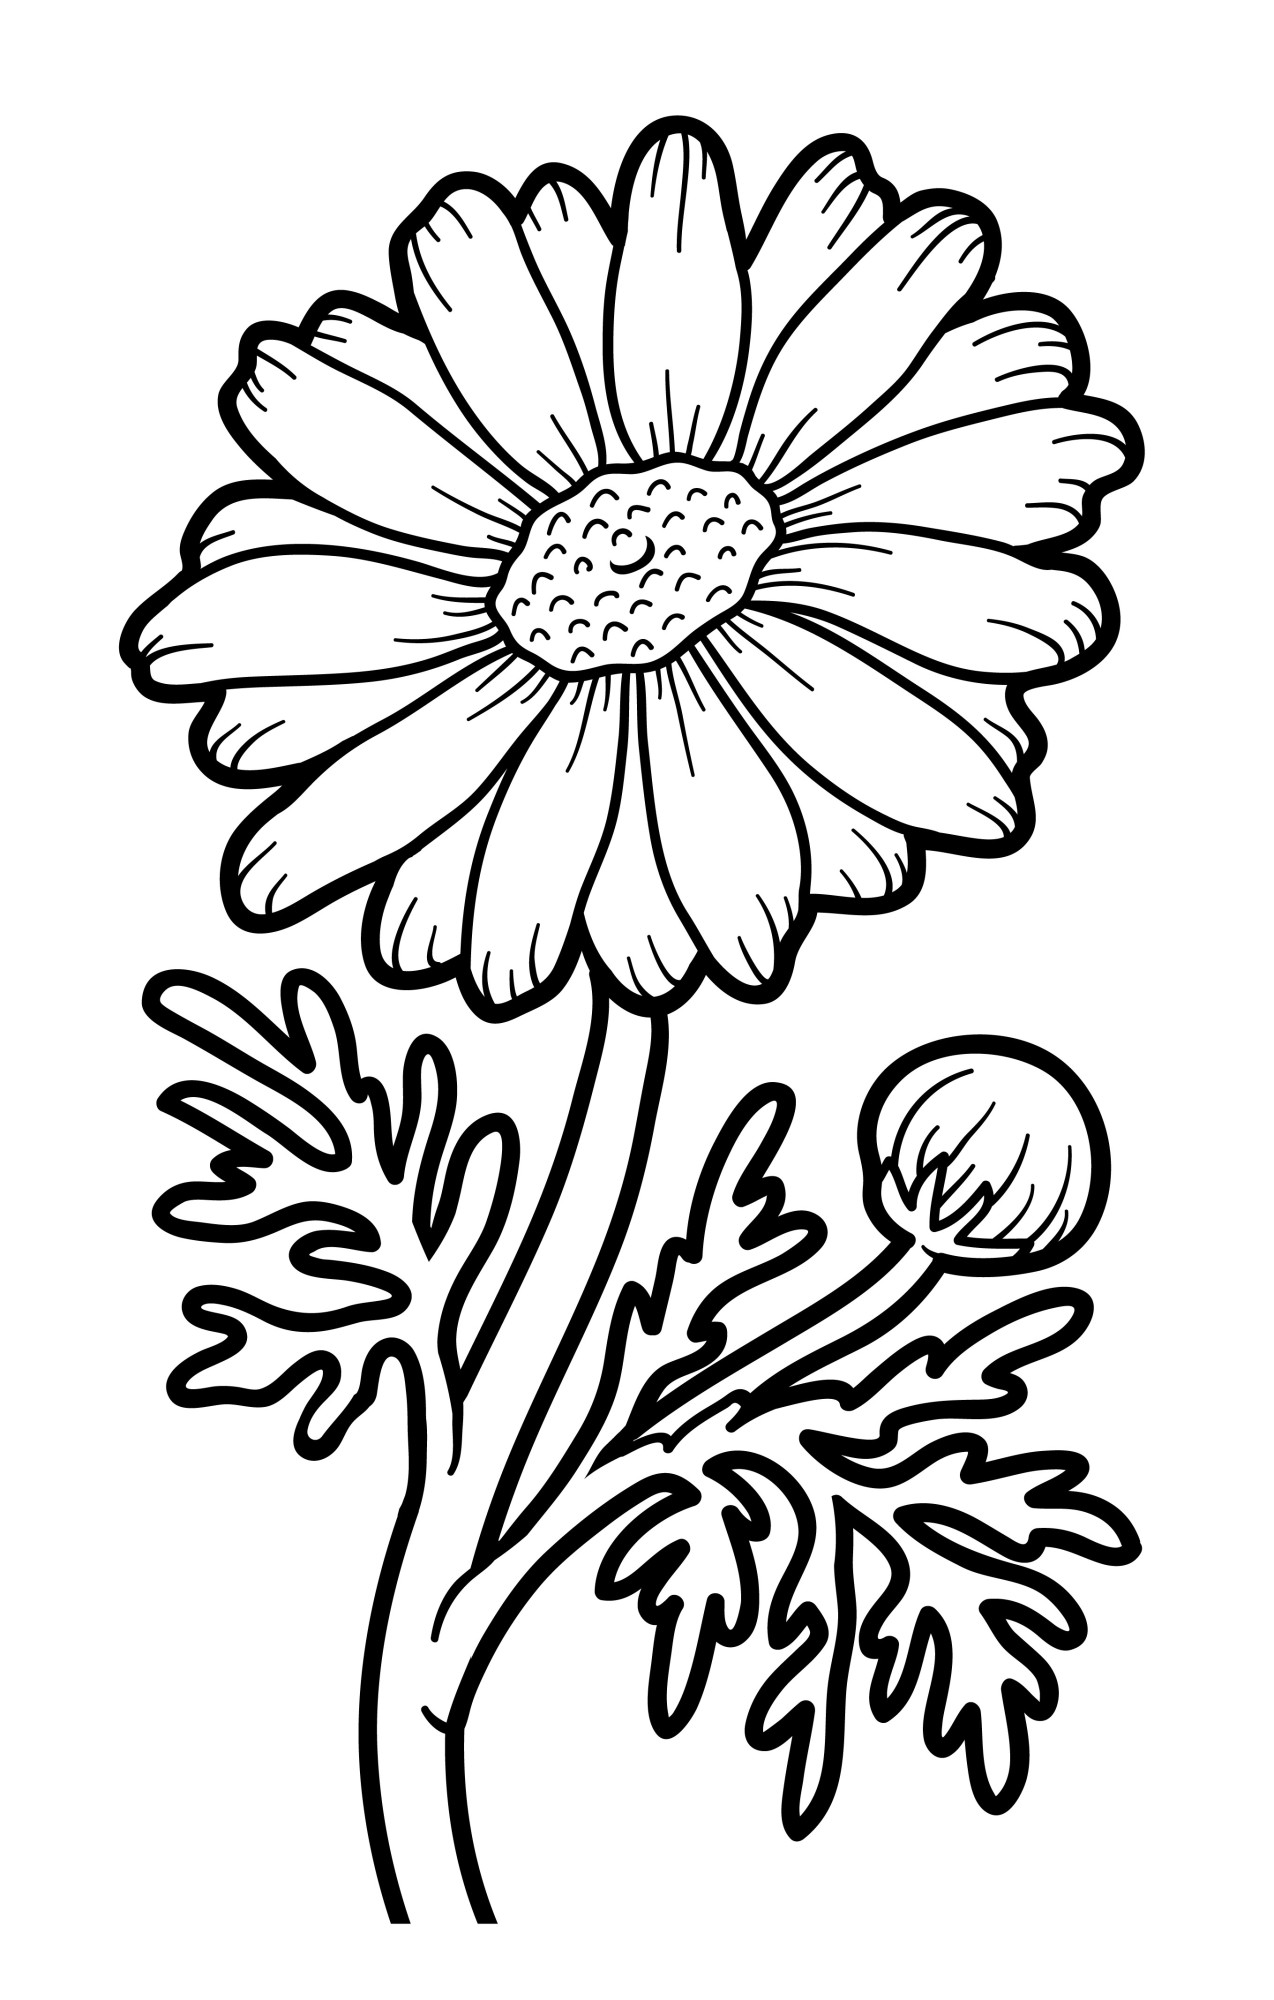 Раскраска для детей: большой цветок ромашки